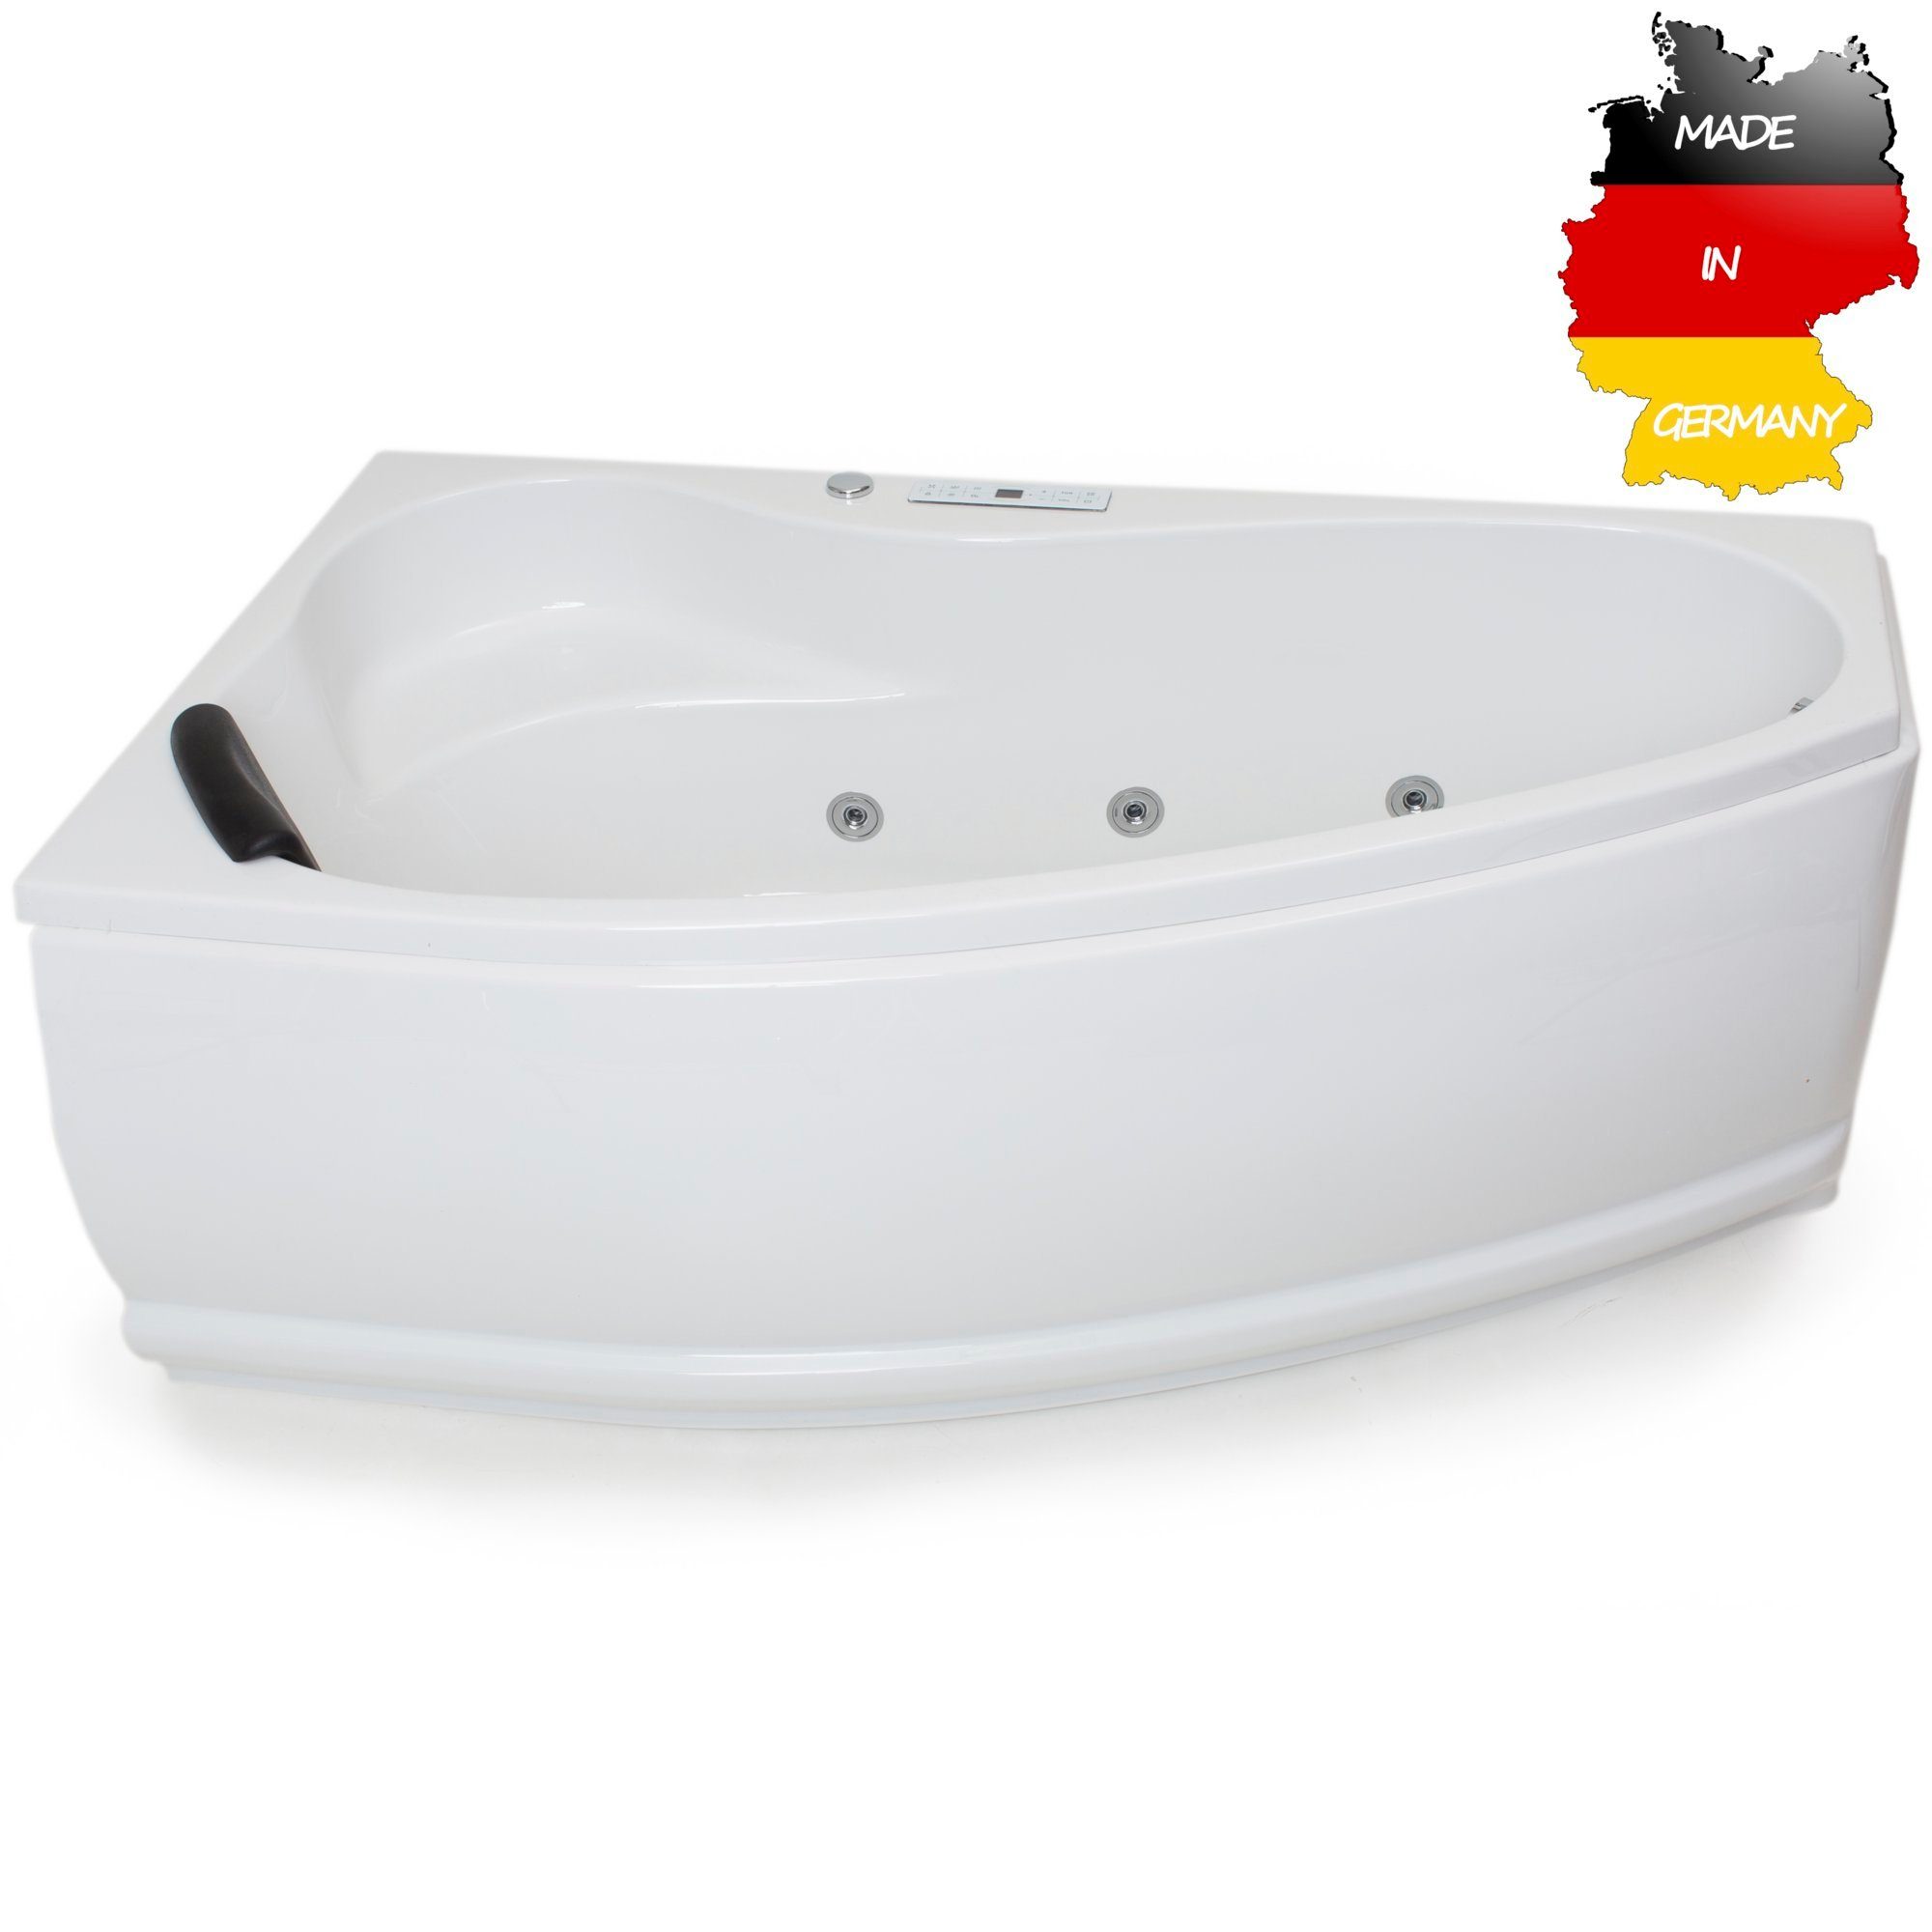 Basera® Whirlpool-Badewanne CLASSIC Indoor Eck-Whirlpool Badewanne Formentera Links 160 x 90 cm, (Komplett-Set), mit 17 Massagedüsen, LED, Touchpanel, Bluetooth und Radio